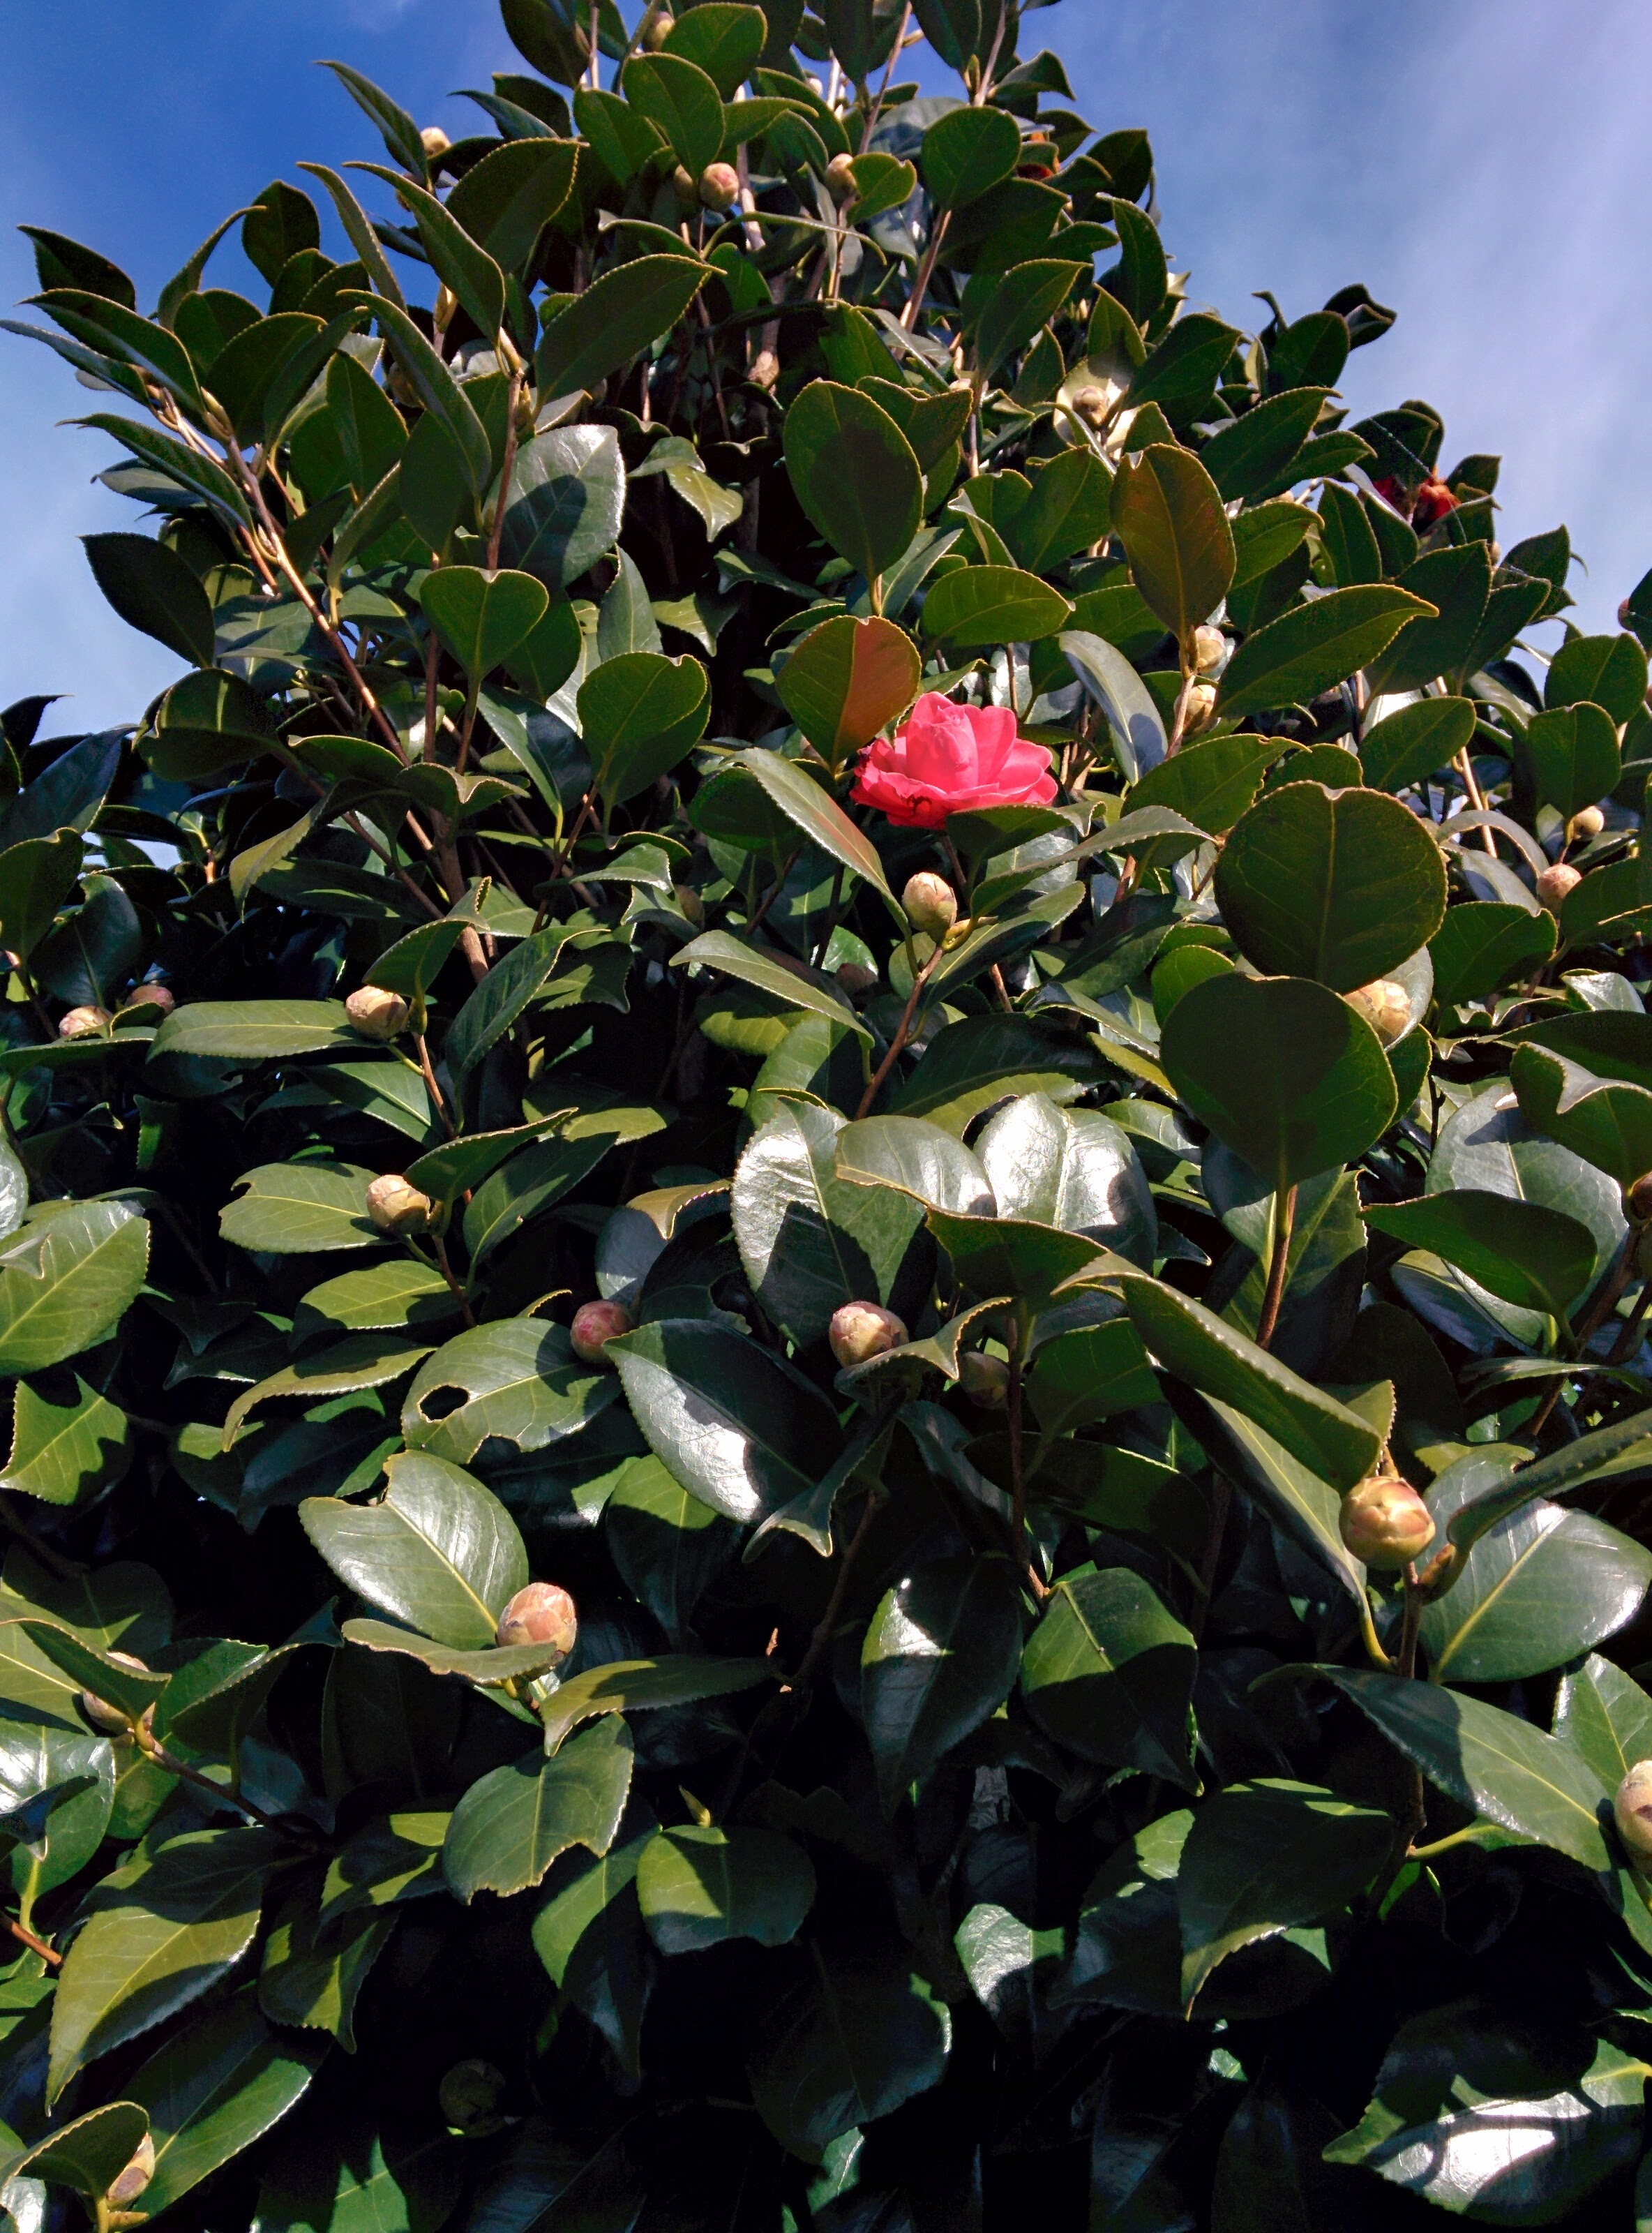 IMG_20151229_123100.jpg 붉은색 꽃을 피우기 시작한 동백나무